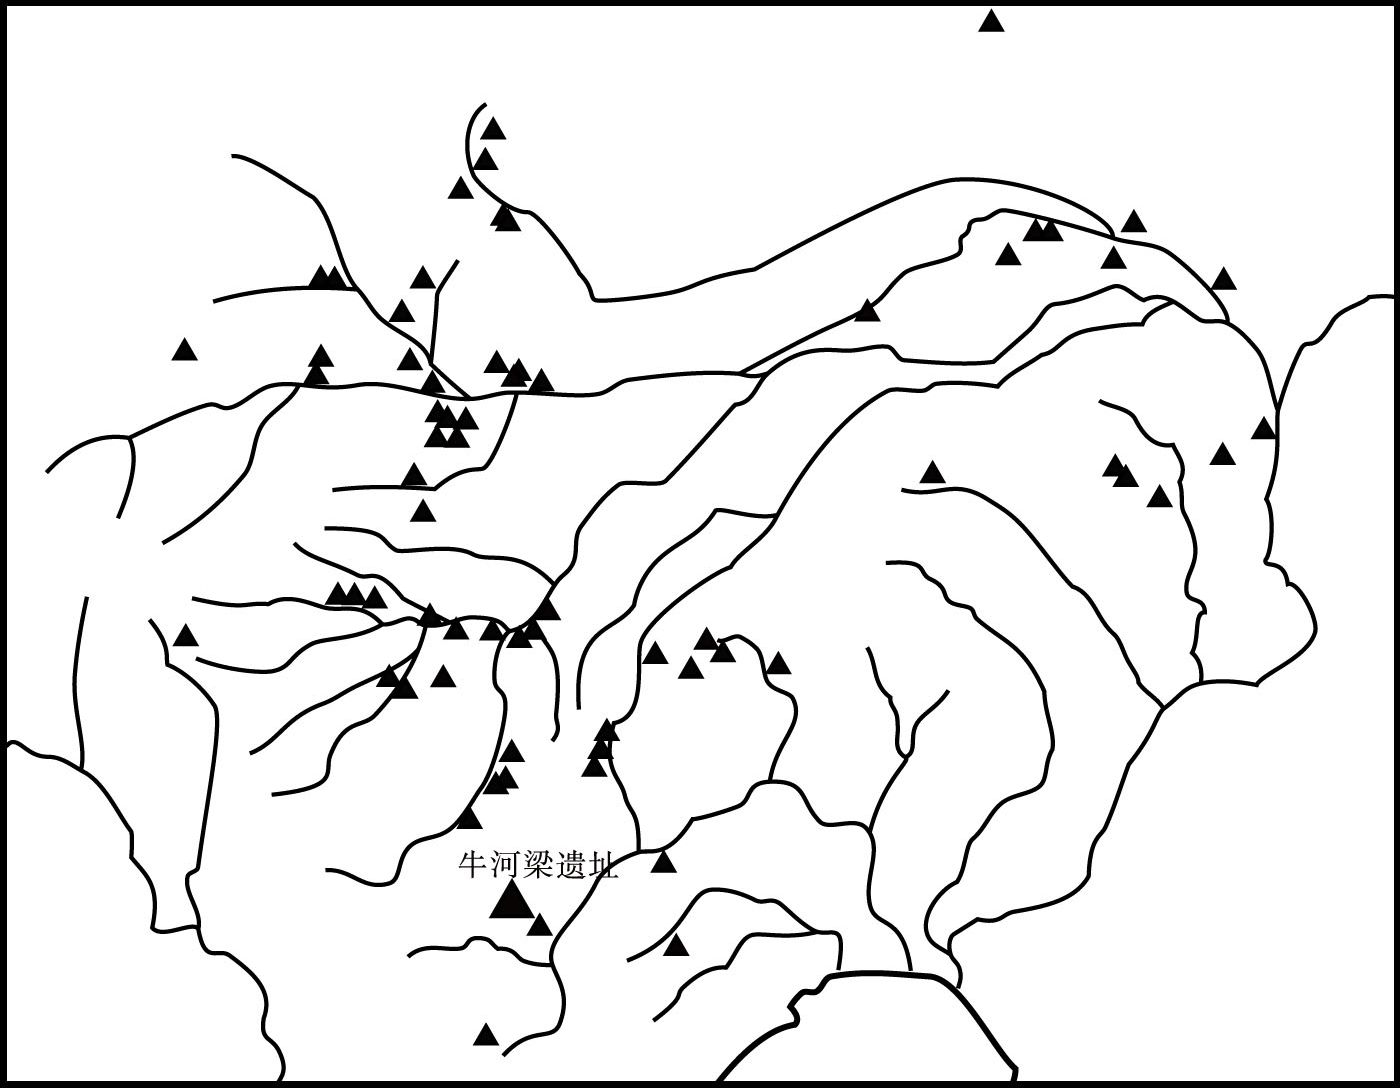 图0-1 红山文化遗址分布示意